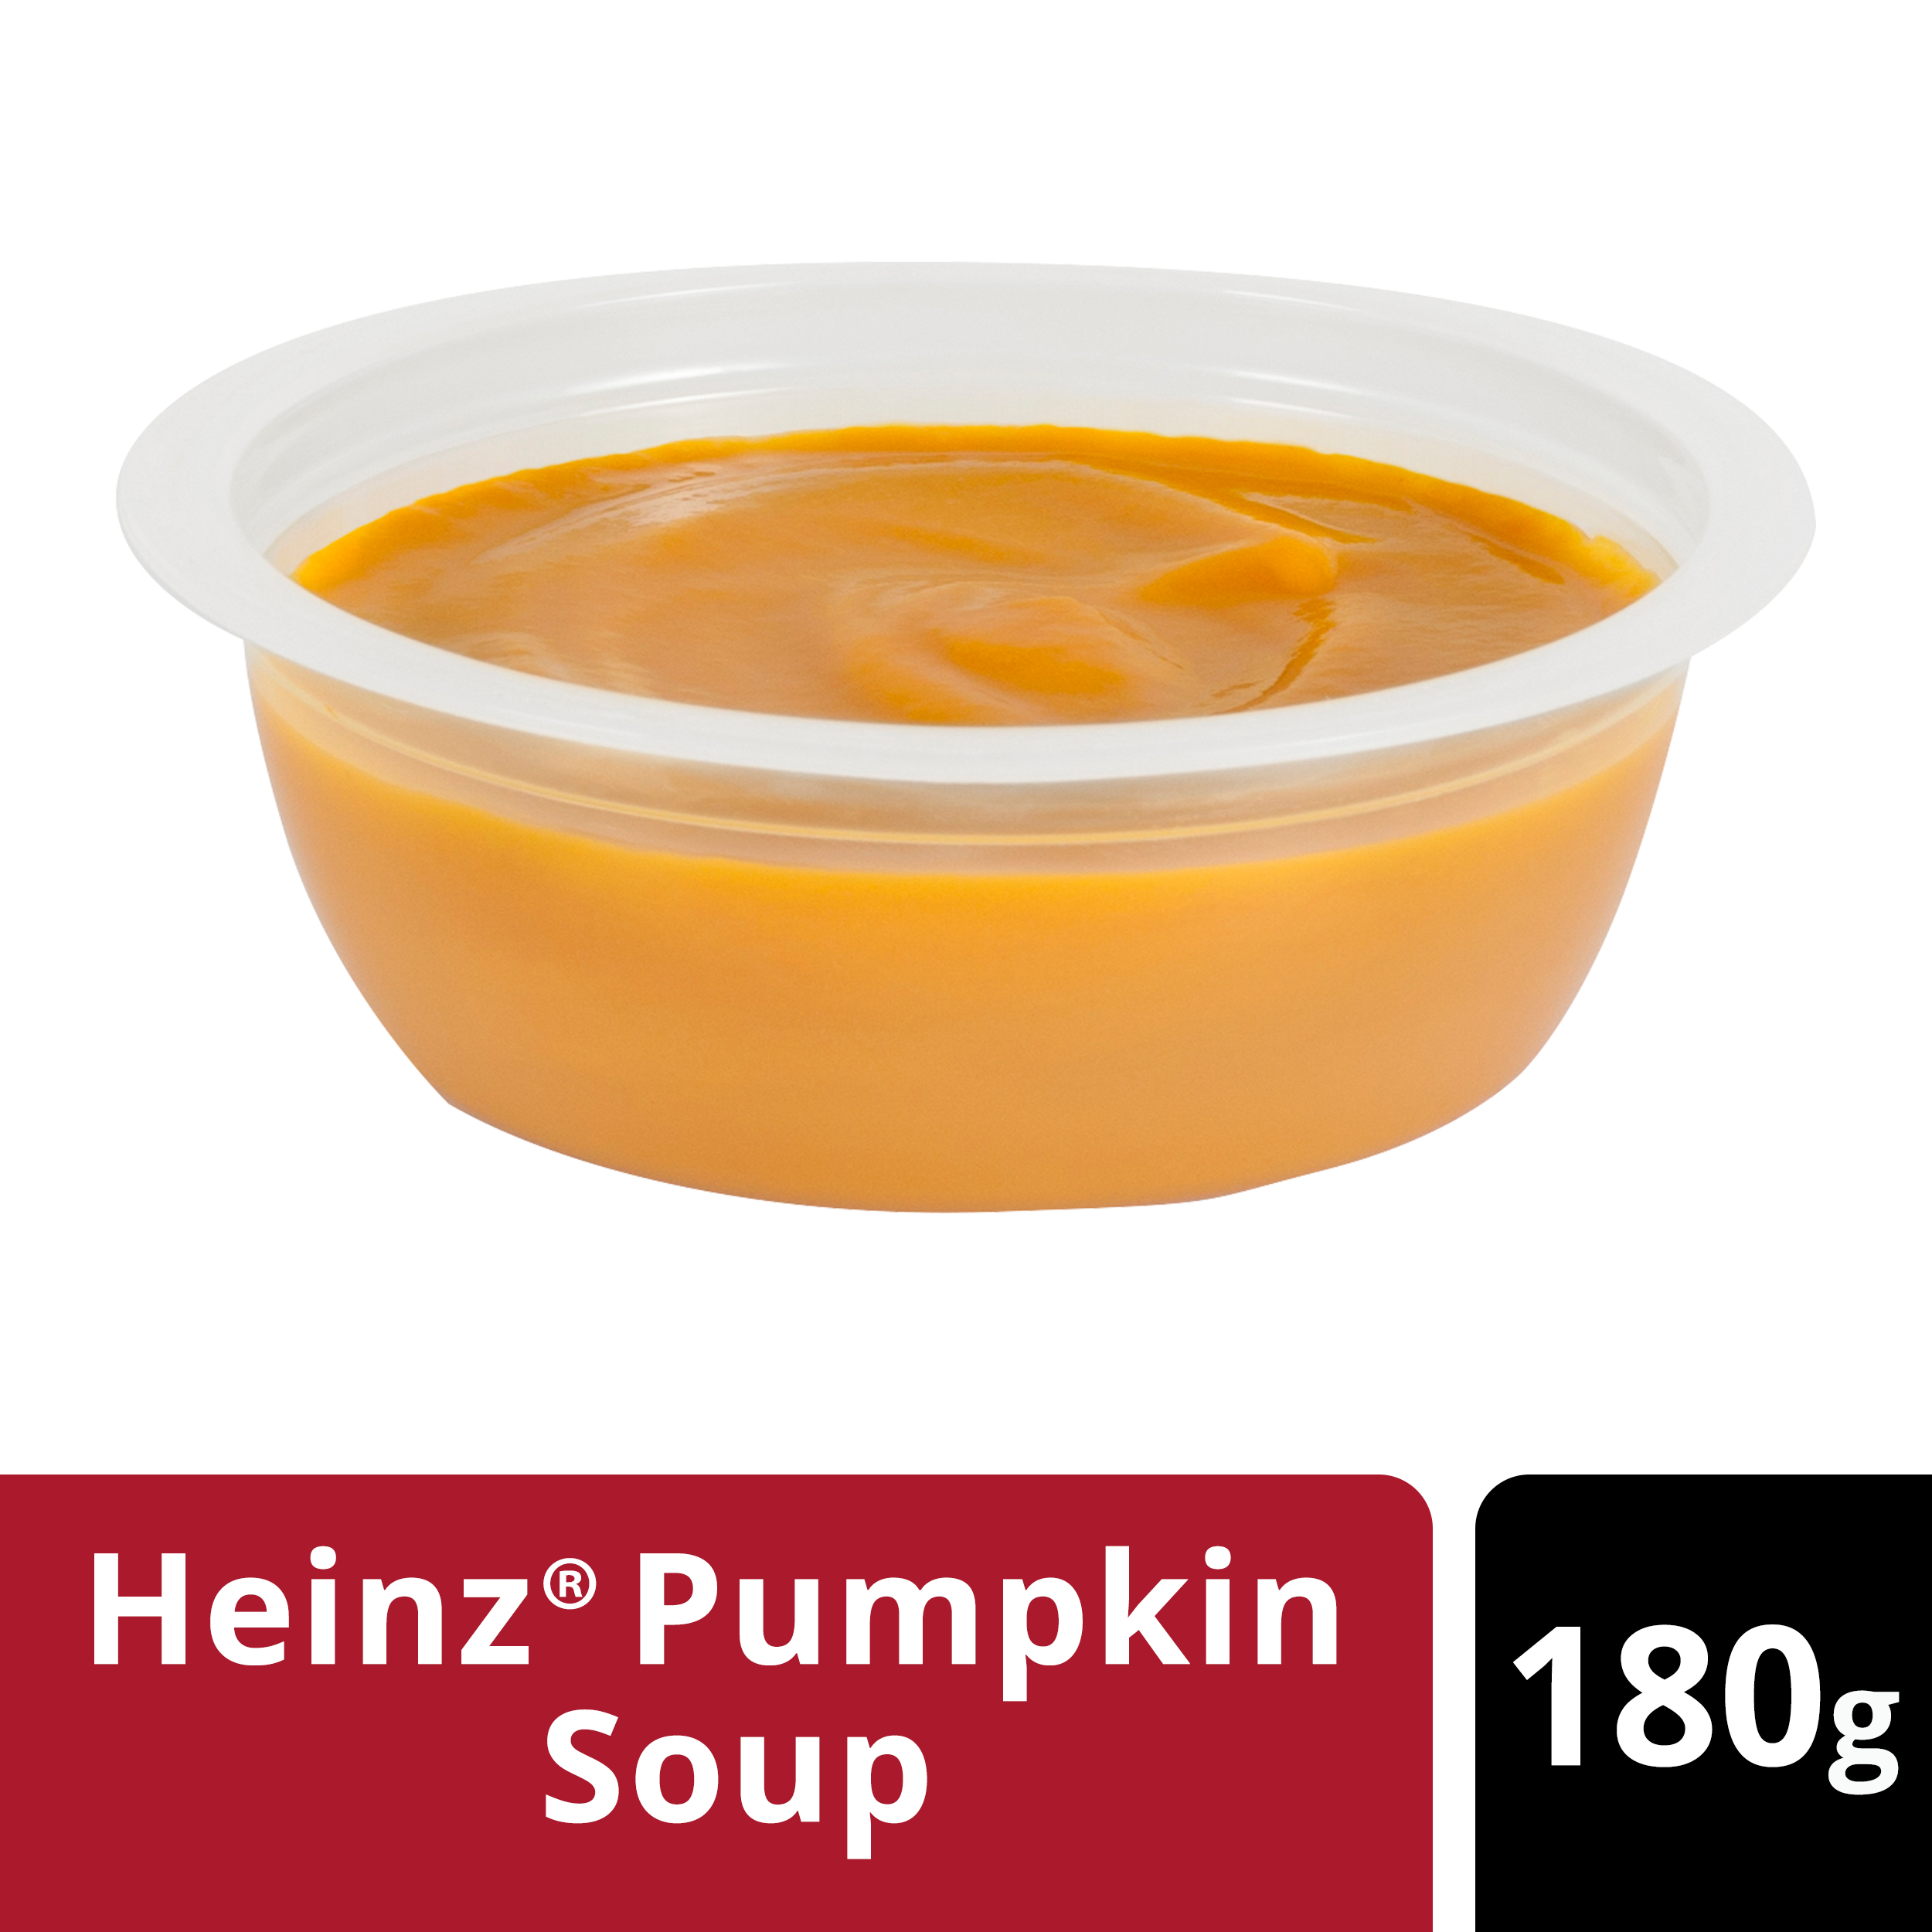  Heinz® Pumpkin Soup Portion 180g 